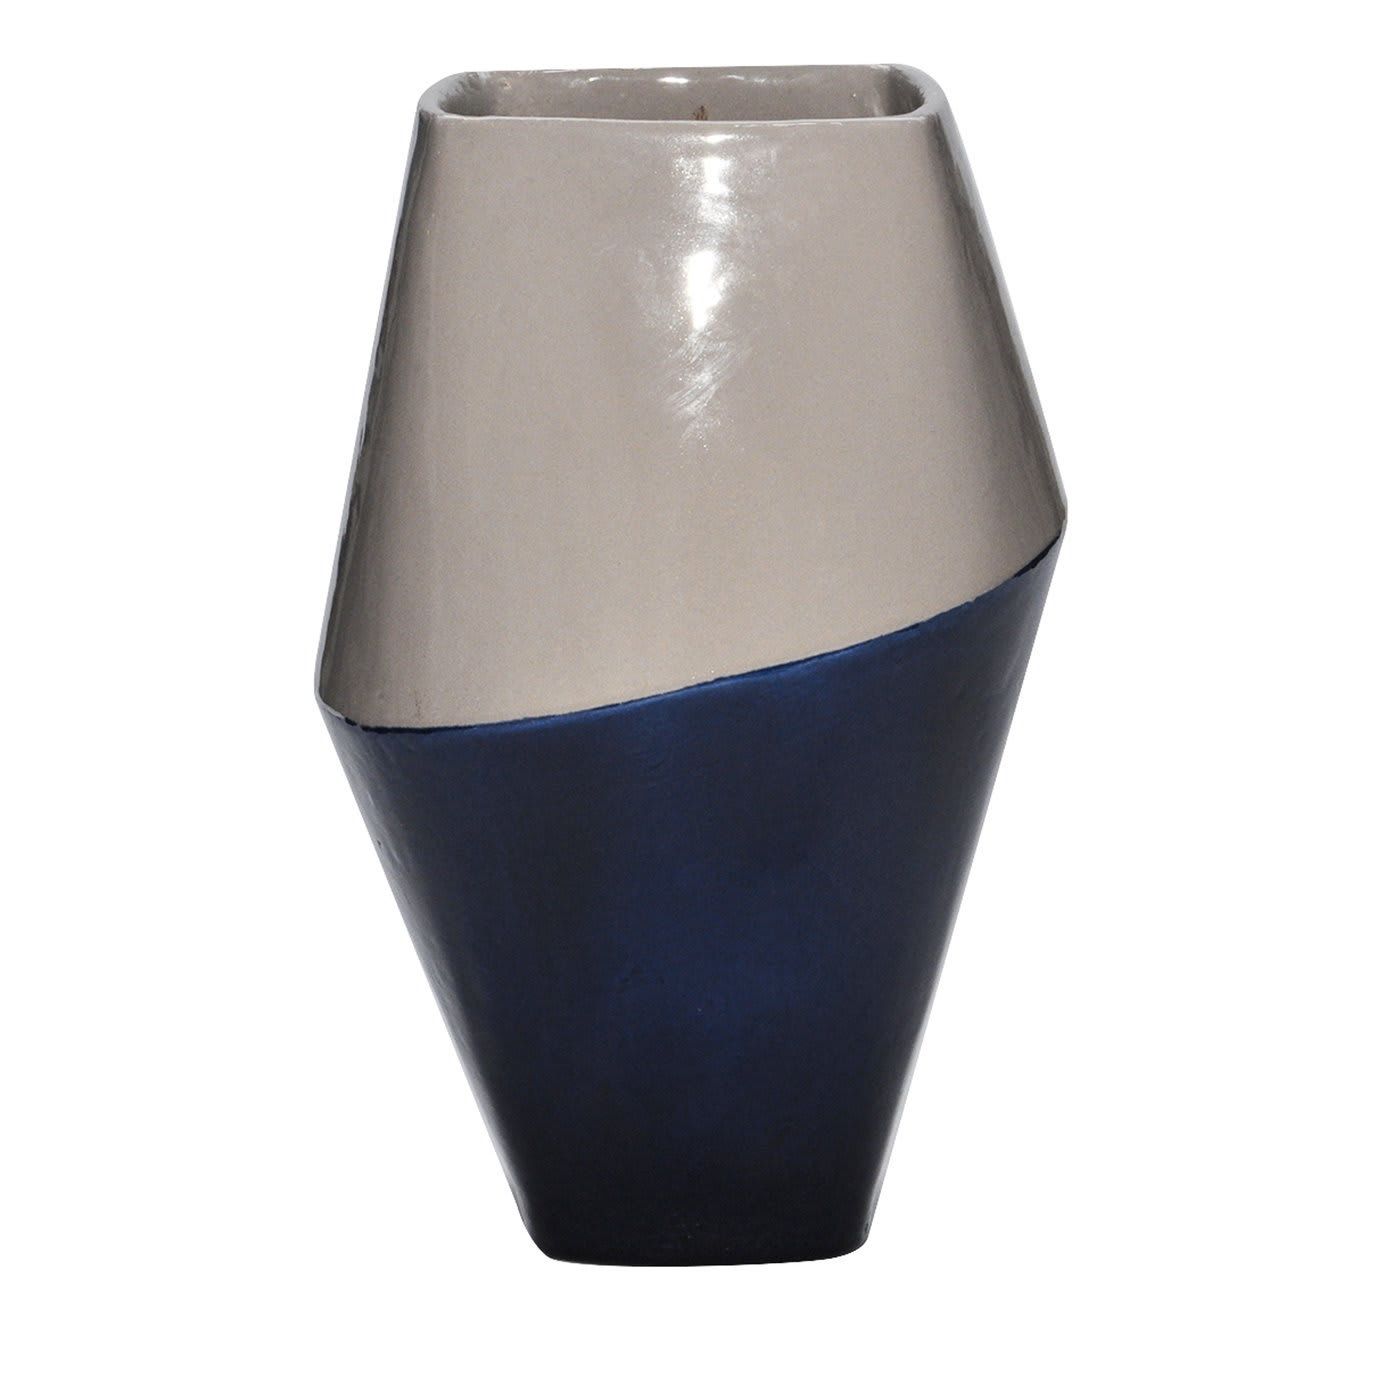 Anfora Vase Gray and Blue - Caruzzo e Fabbro